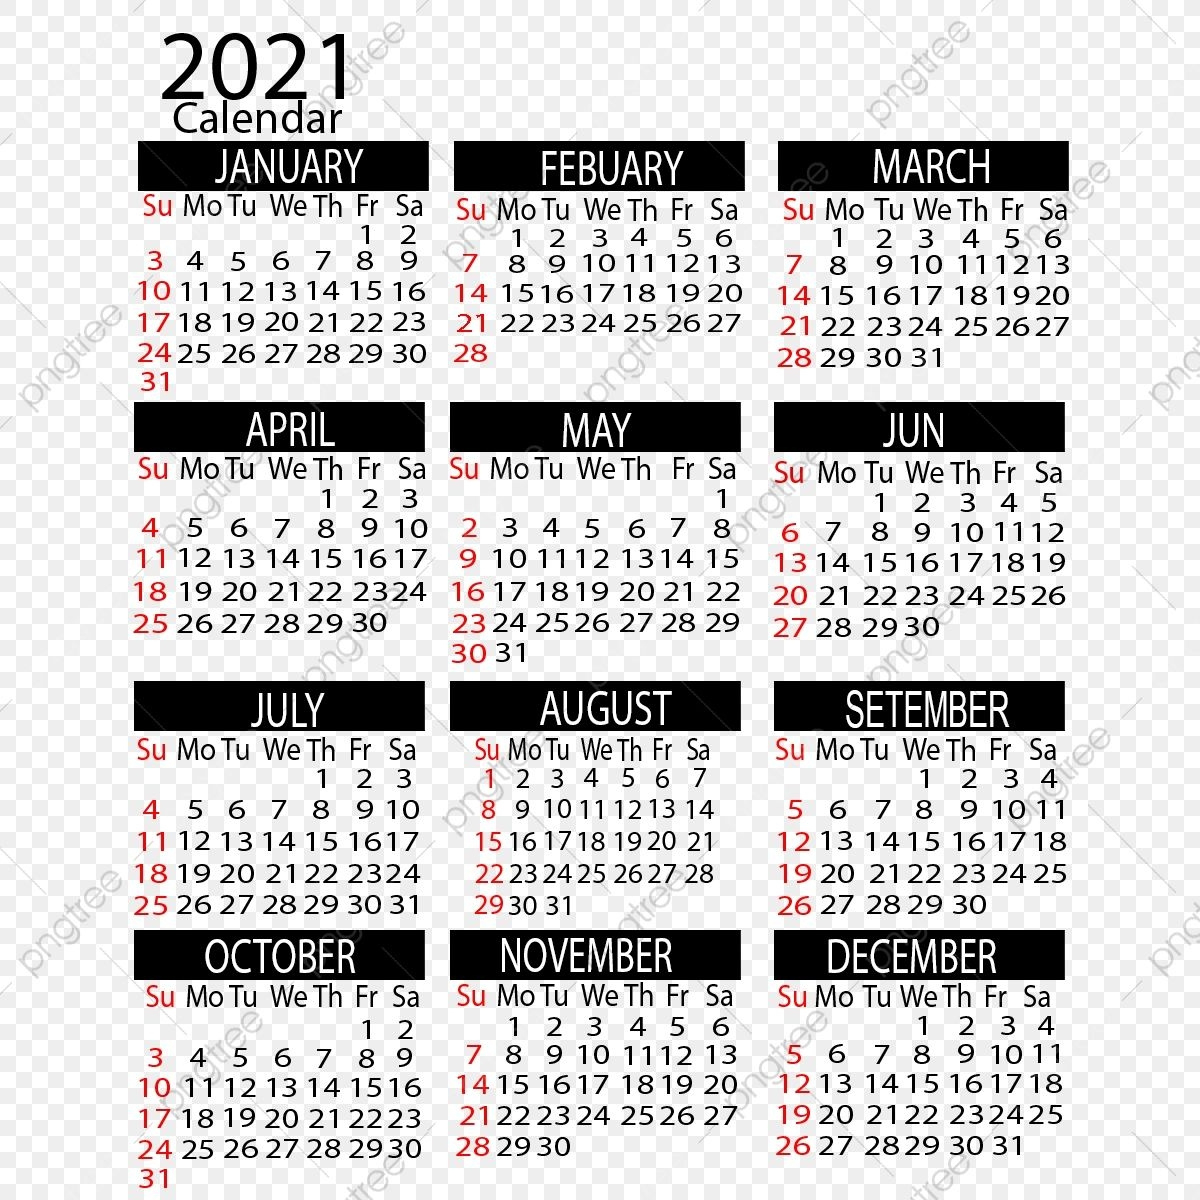 Year 2021 Calendar With Lunar - Example Calendar Printable November 2021 Moon Calendar